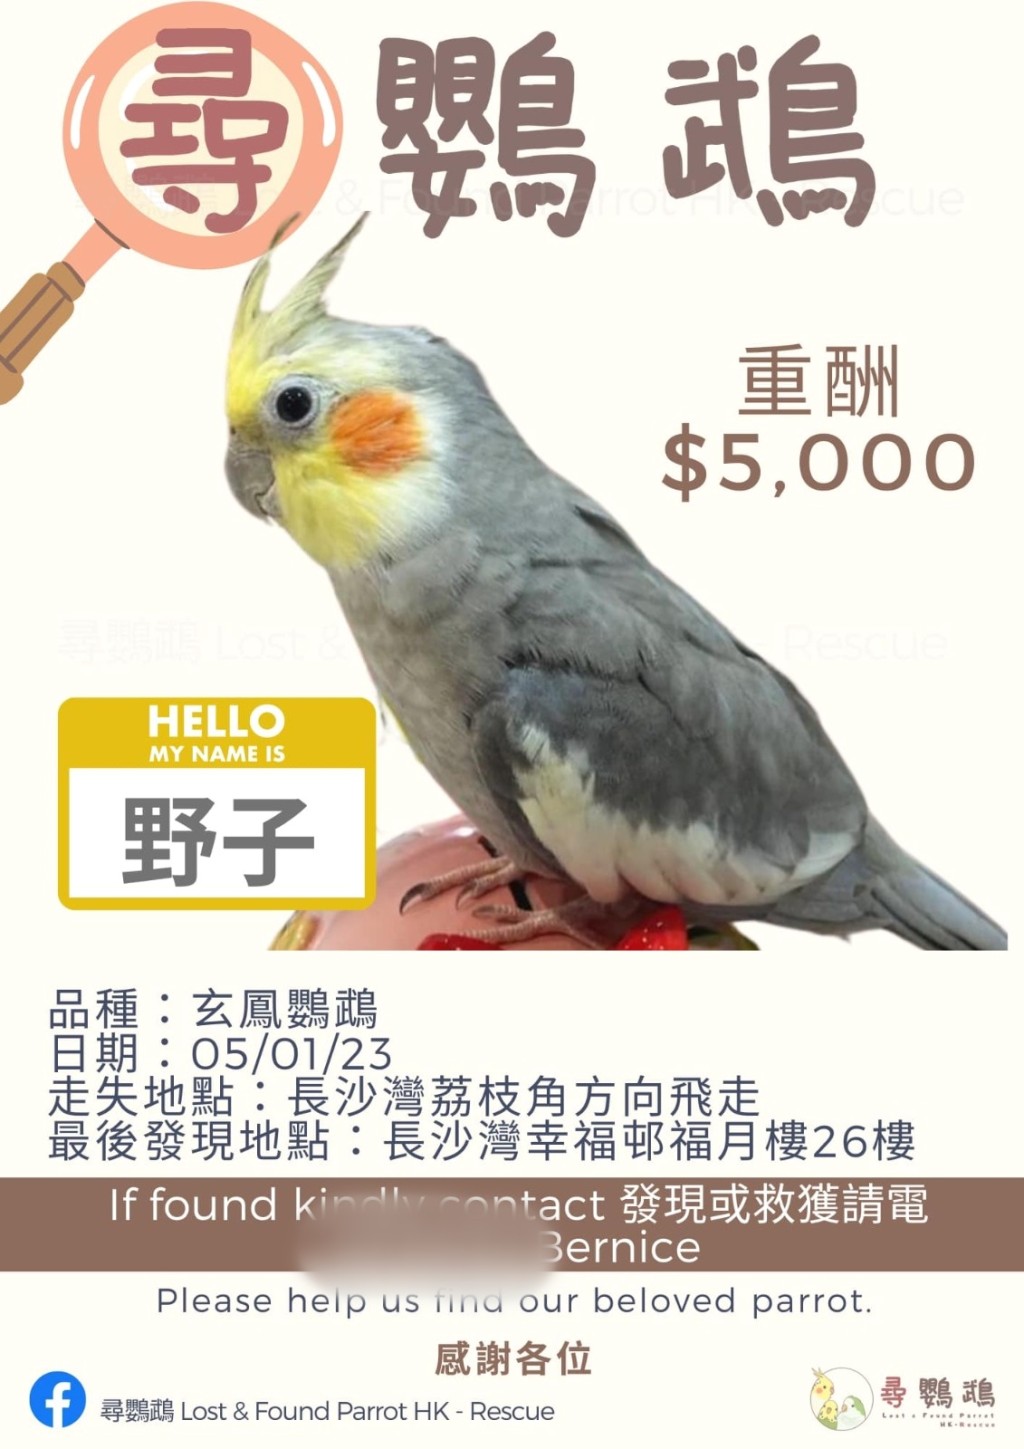 主人Bernice出5000元厚酬为要寻回「野子」。fb寻鹦鹉 （香港）Lost & Found Parrot HK-Rescue